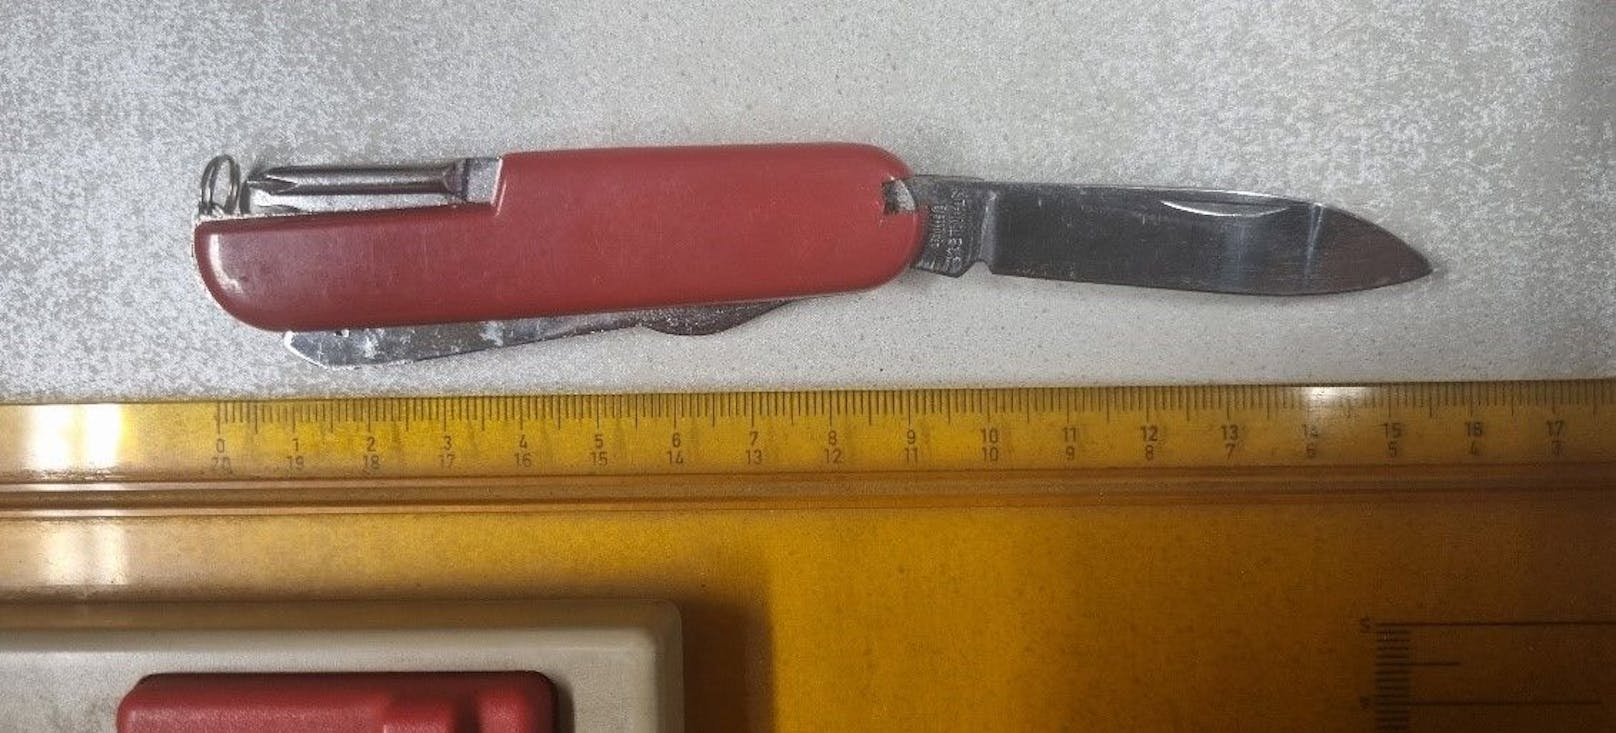 Mit diesem Messer drohte ein Rumäne einem 72-Jährigen.